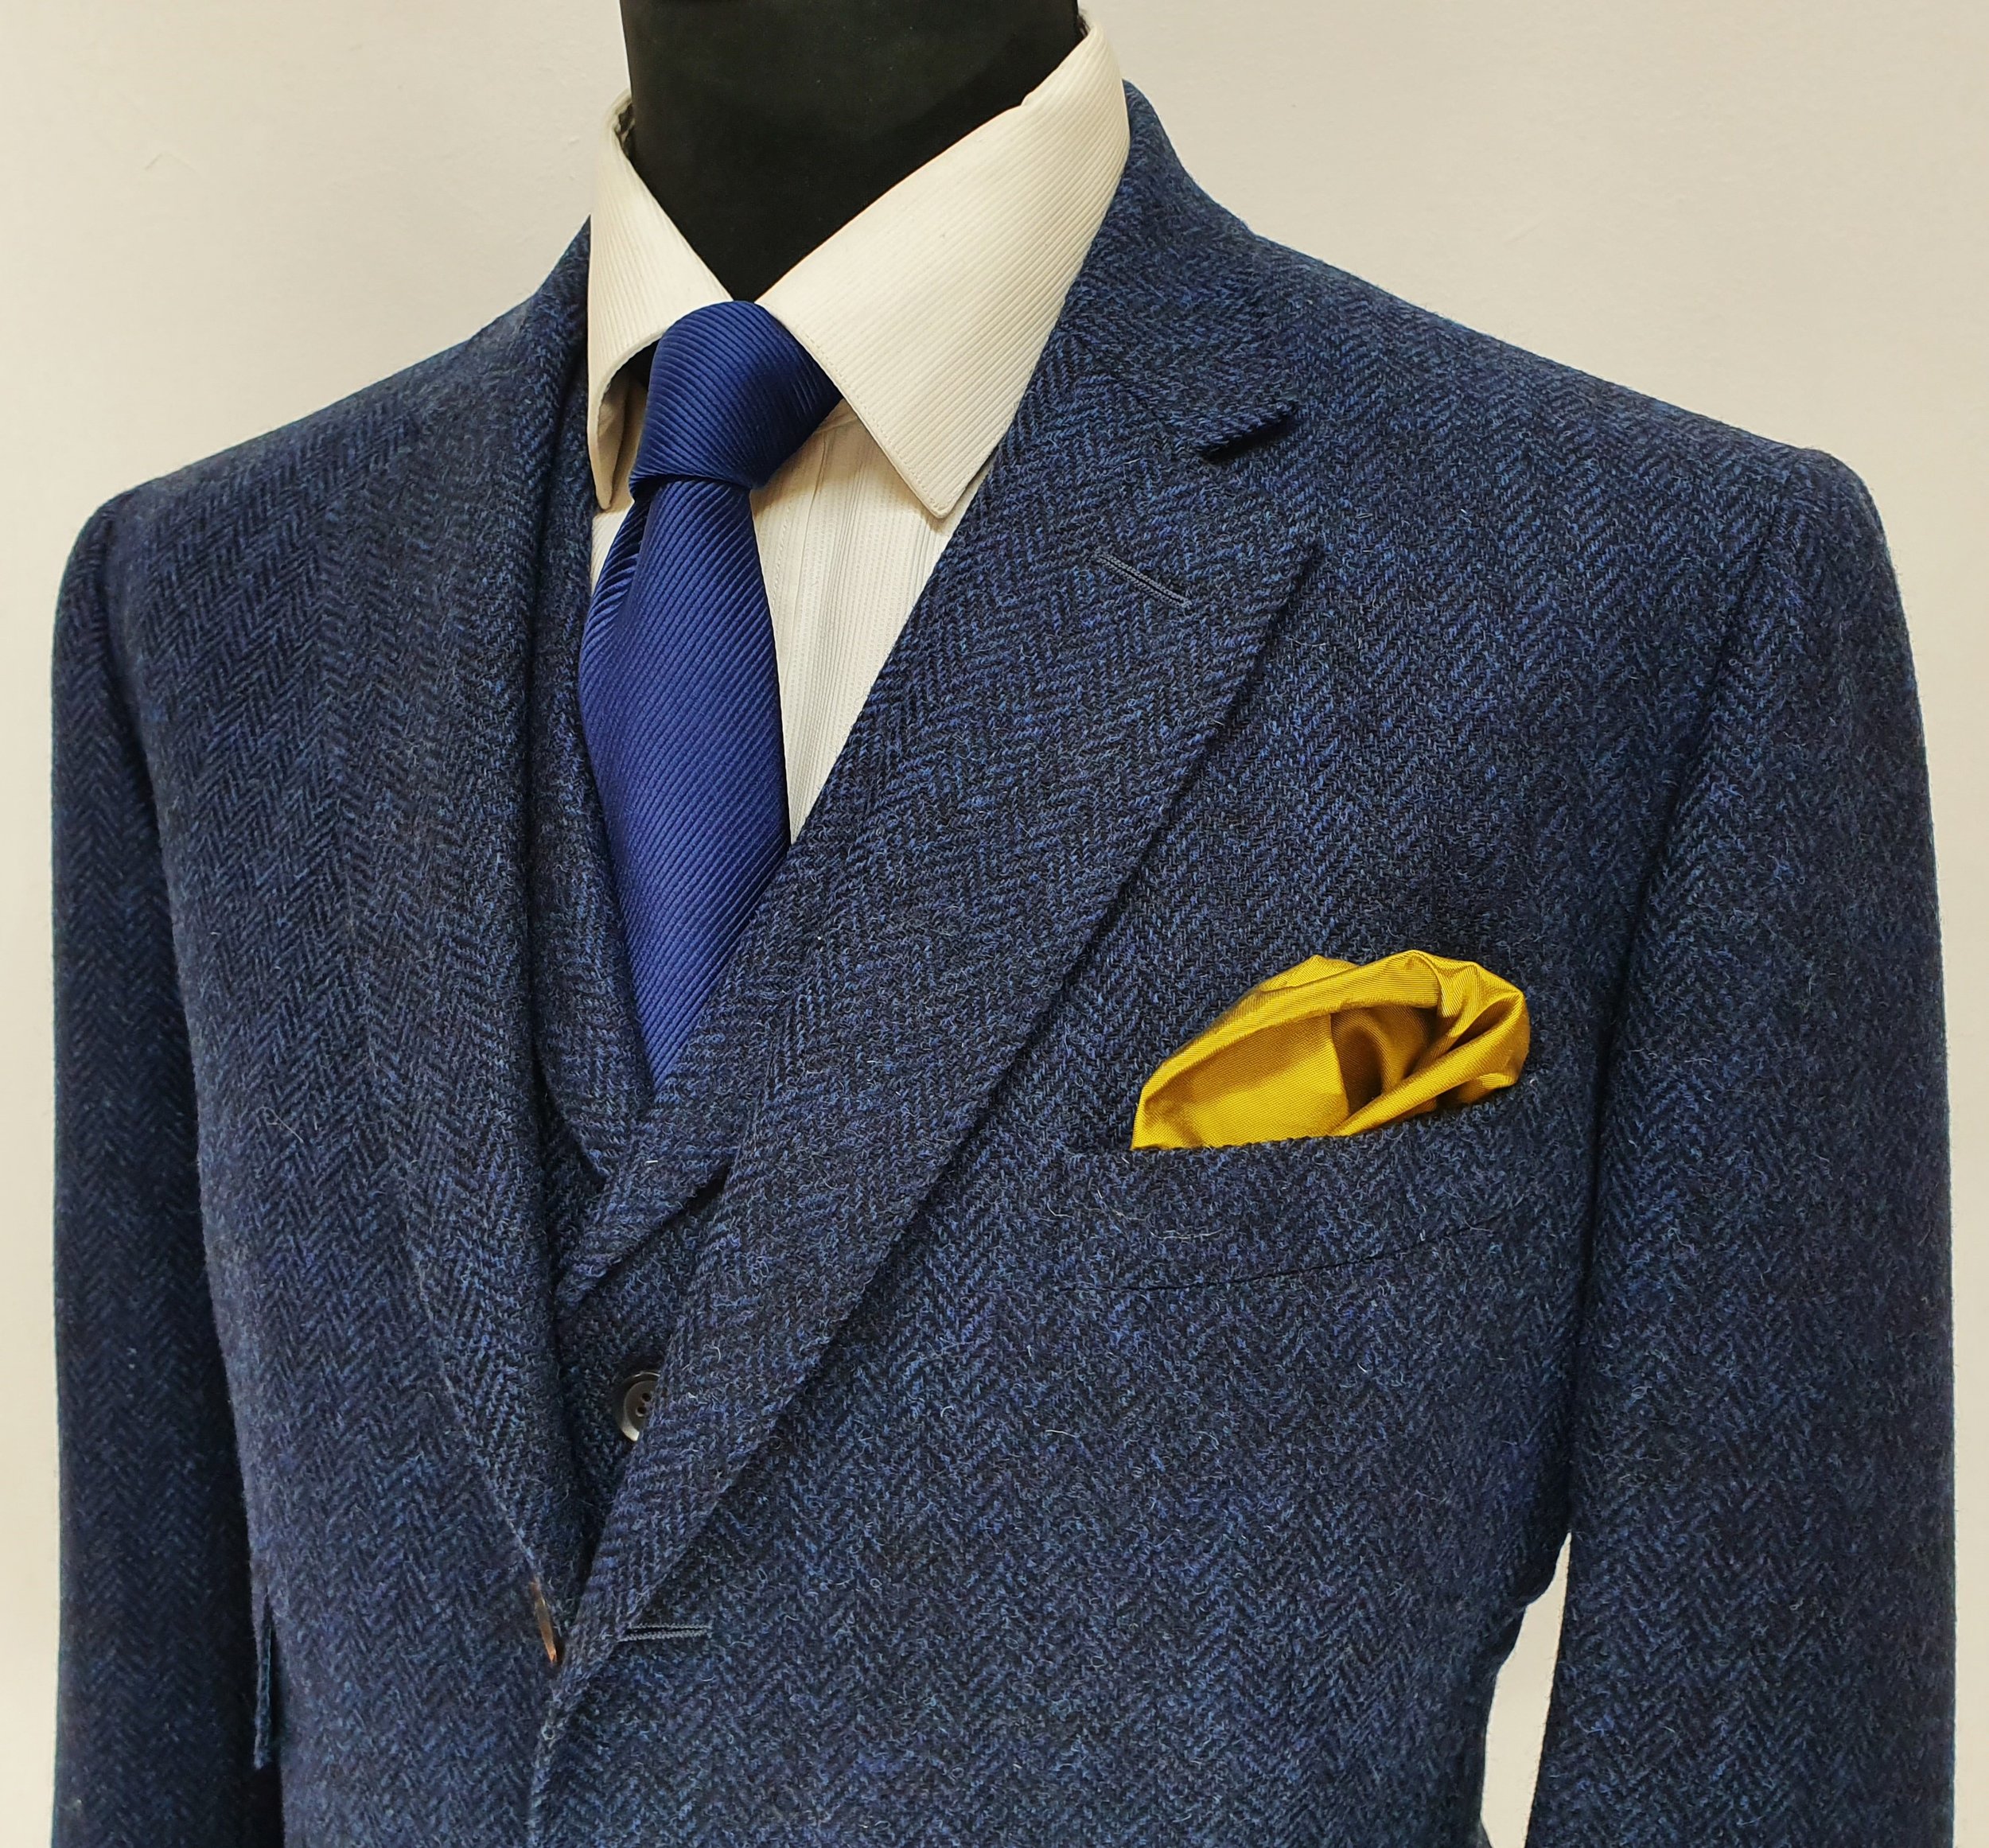 3 Piece Suit in Holland and Sherry Blue Herringbone Tweed (8).jpg